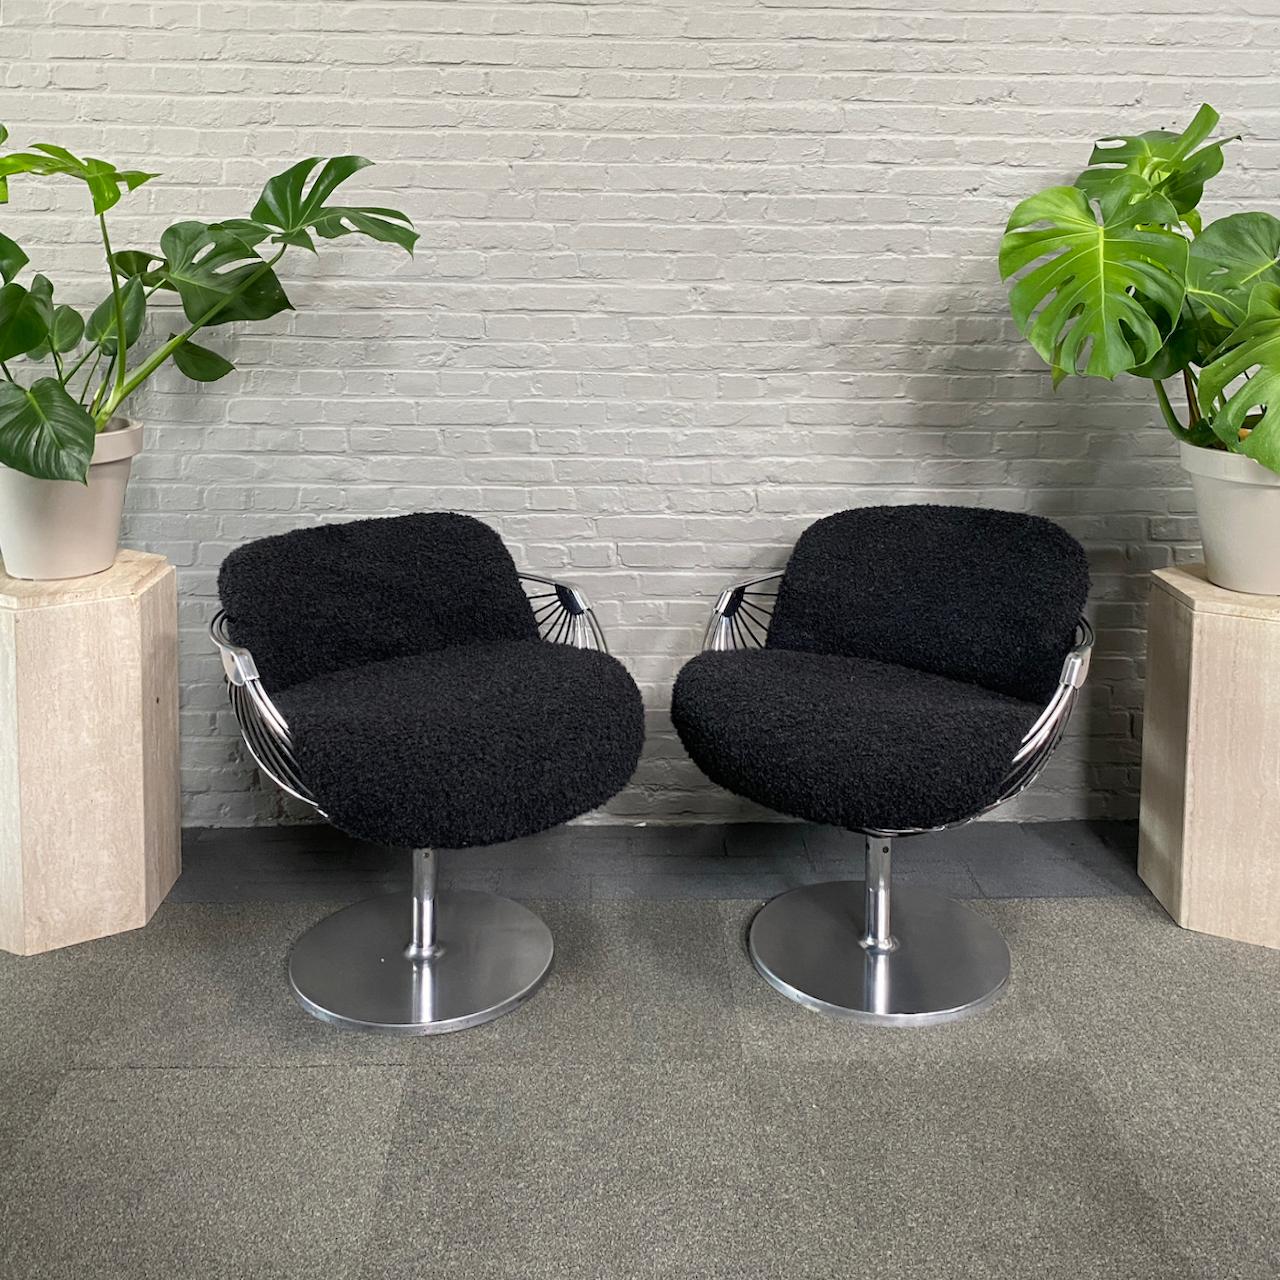 Erstaunlich & Elegantes Lounge-Set.
Entworfen von dem belgischen Industriedesigner Rudi Verelst für Novalux.

Die 2 drehbaren Lounge-Sessel haben eine sehr ausgeprägte und ikonische verchromte Drahtrahmen-Schalenstruktur, die immer noch in einem